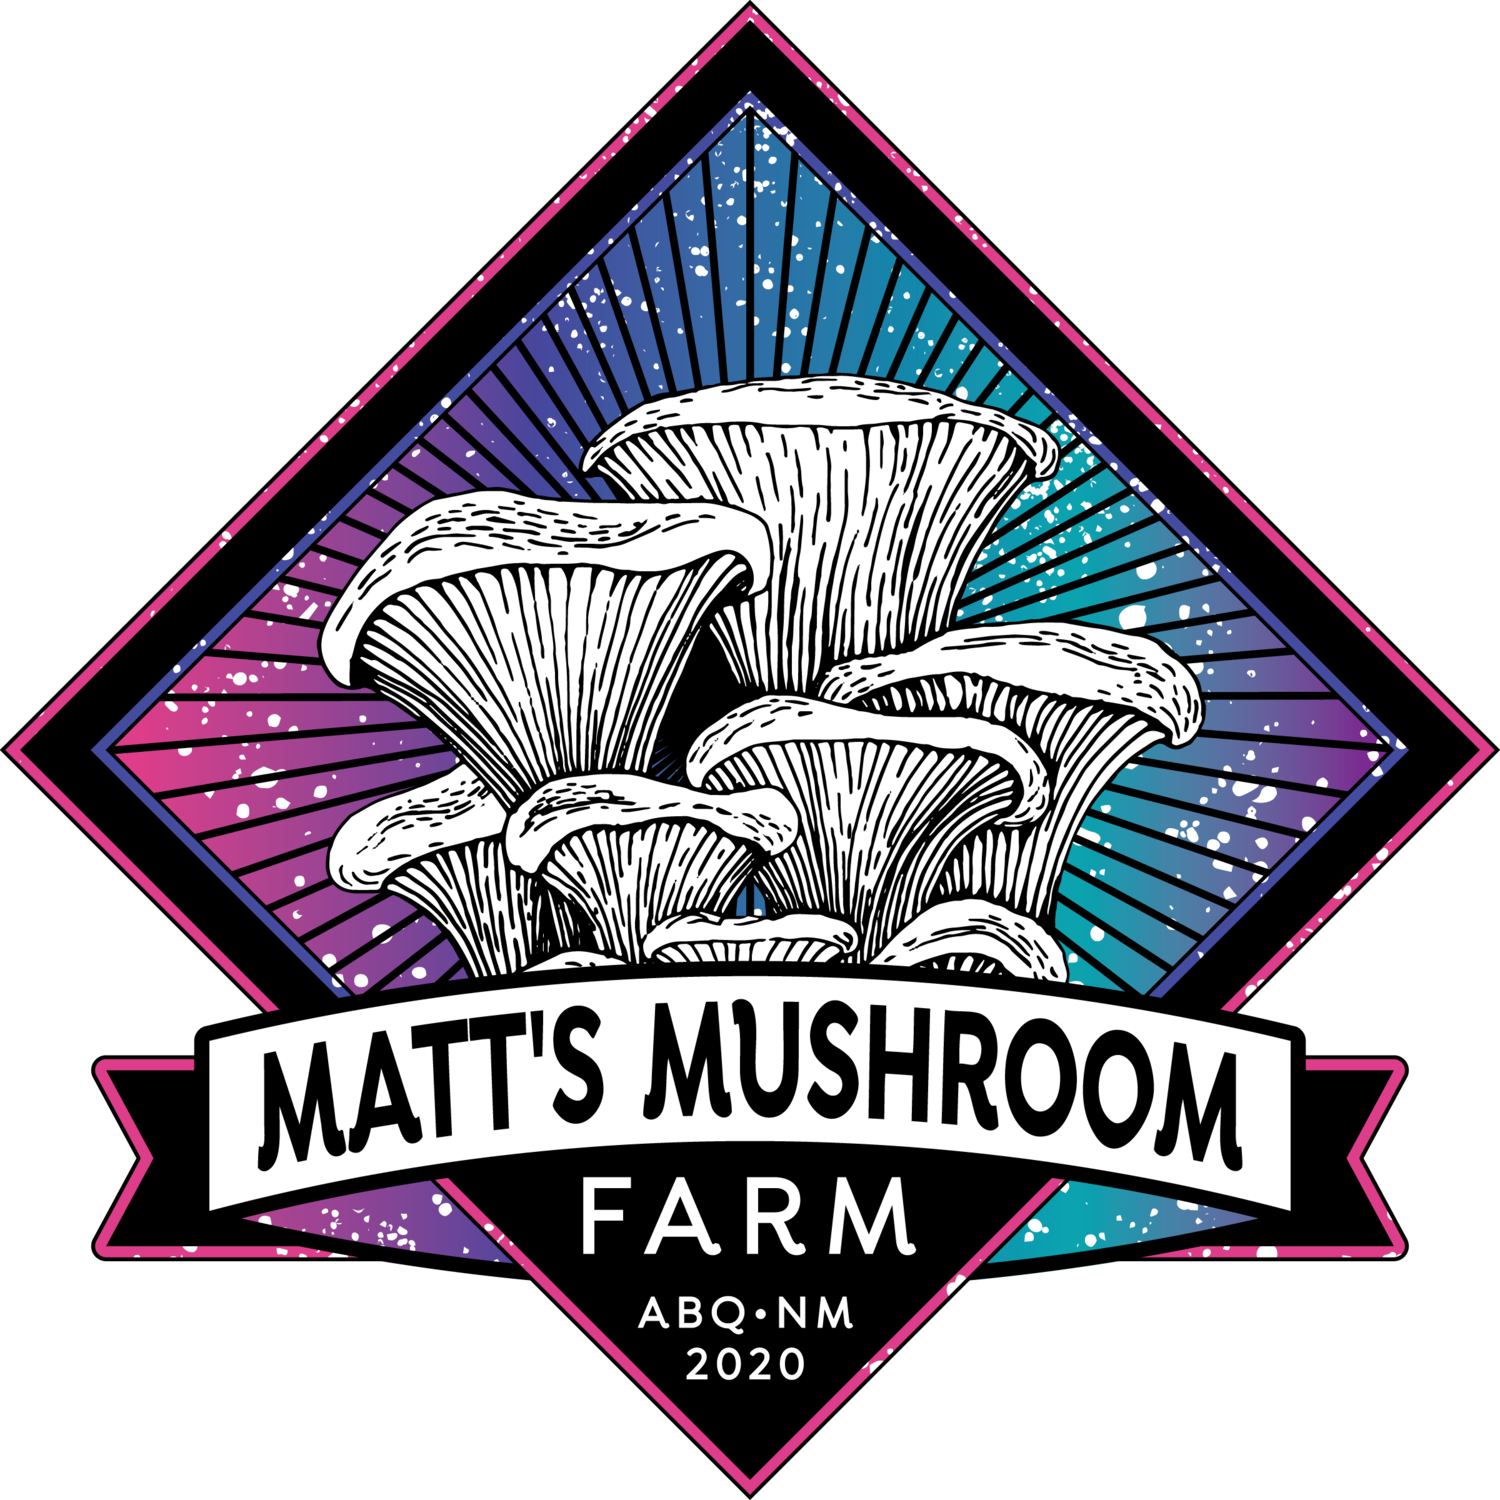 Matt's Mushroom Farm